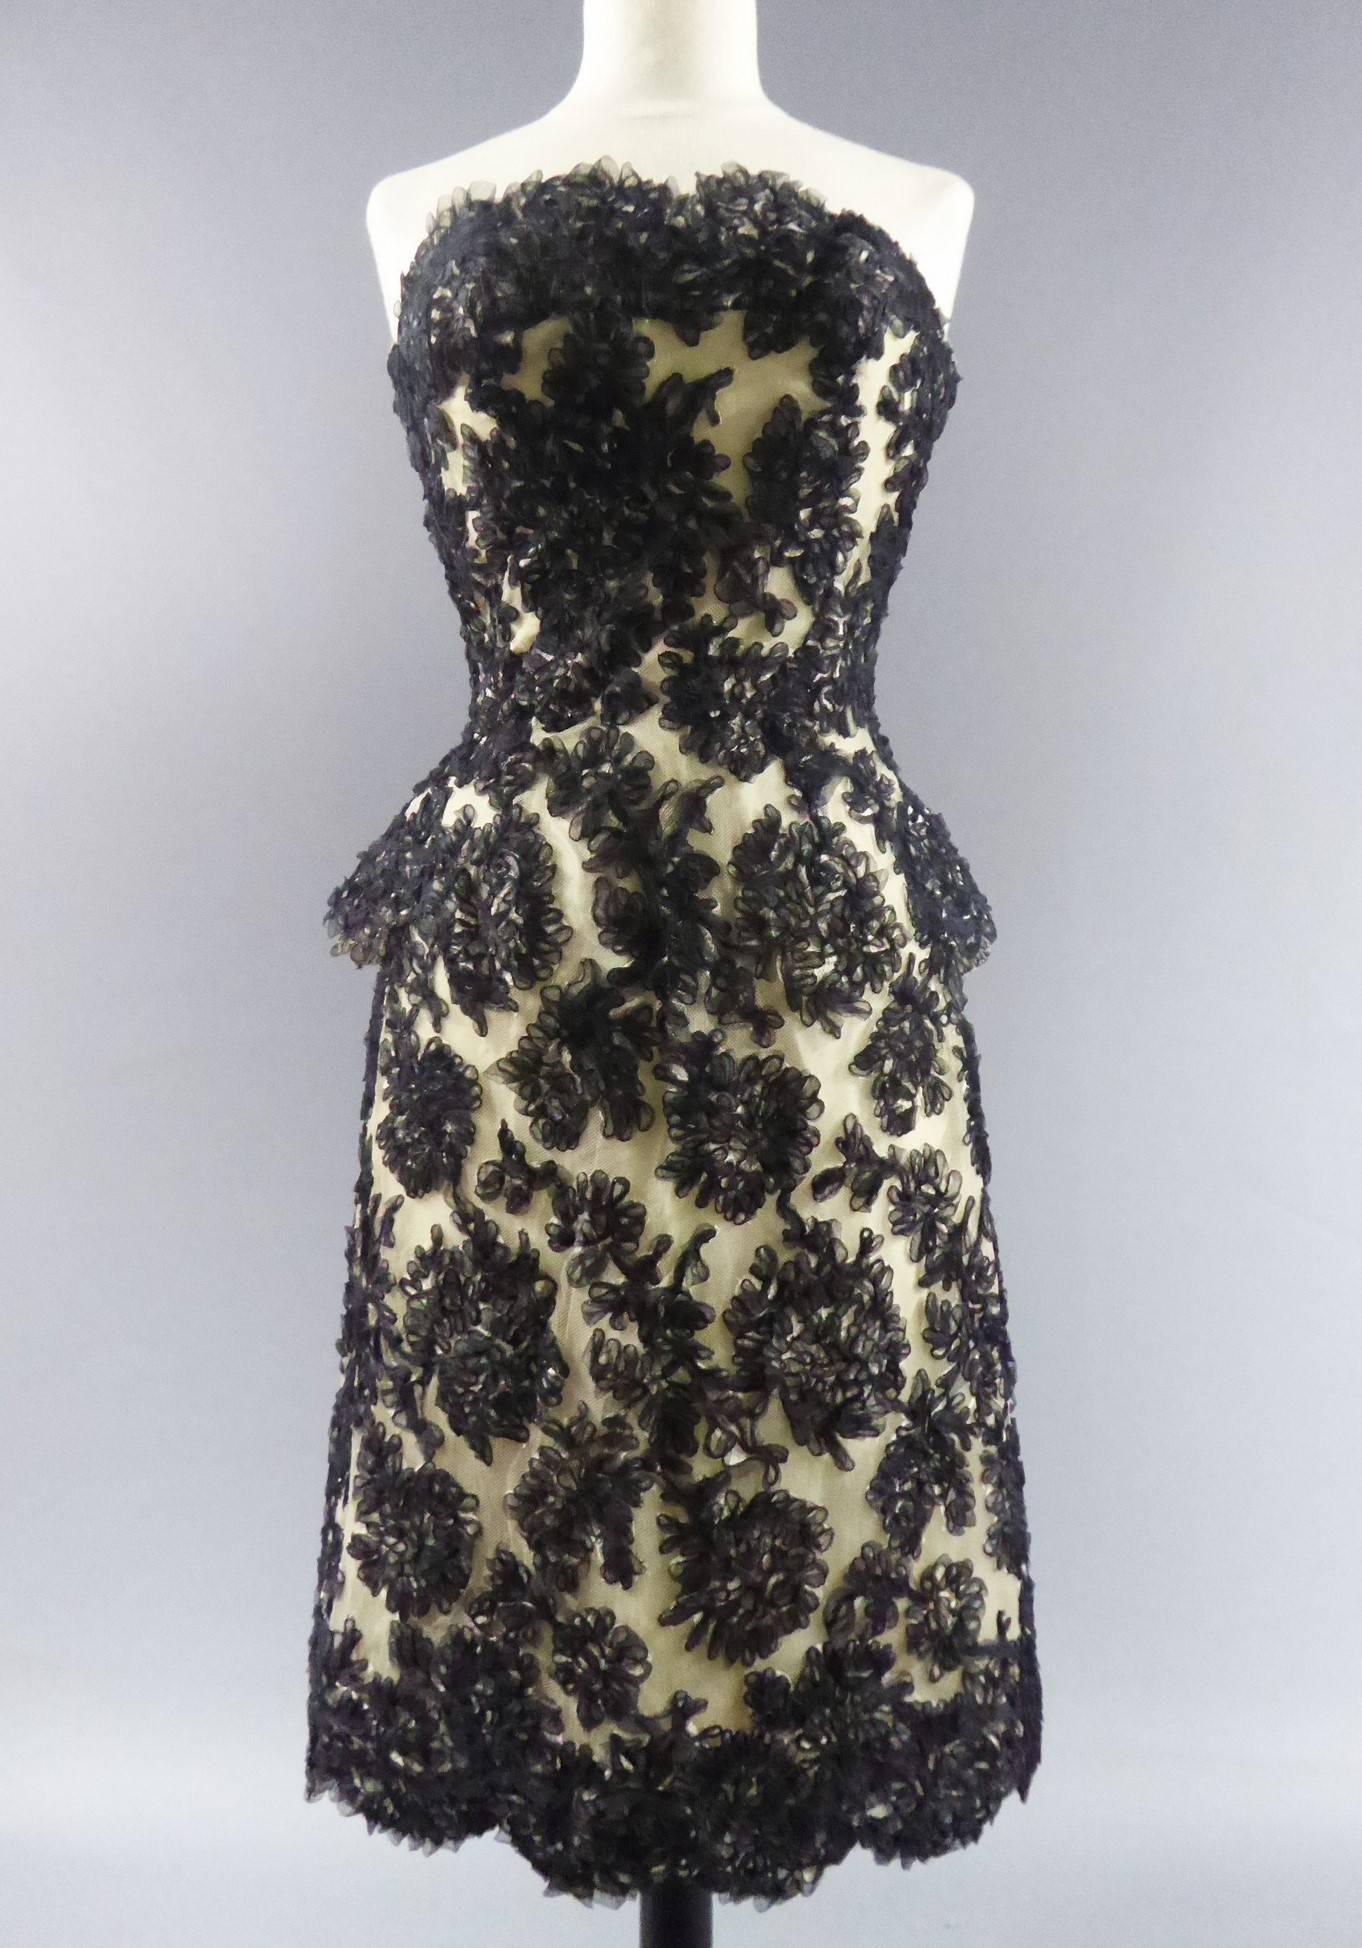 Ca. 1960

Frankreich

Haute Couture Carven Kleid. Ein Bustier mit Basken im Rücken mit vier Bändern aus schwarzem Samt. Stickerei aus schwarzen Organzabändern auf cremefarbenem Tüll. Petticoat aus Tüll und Faltenrock unter dem Kleid. Reißverschluss